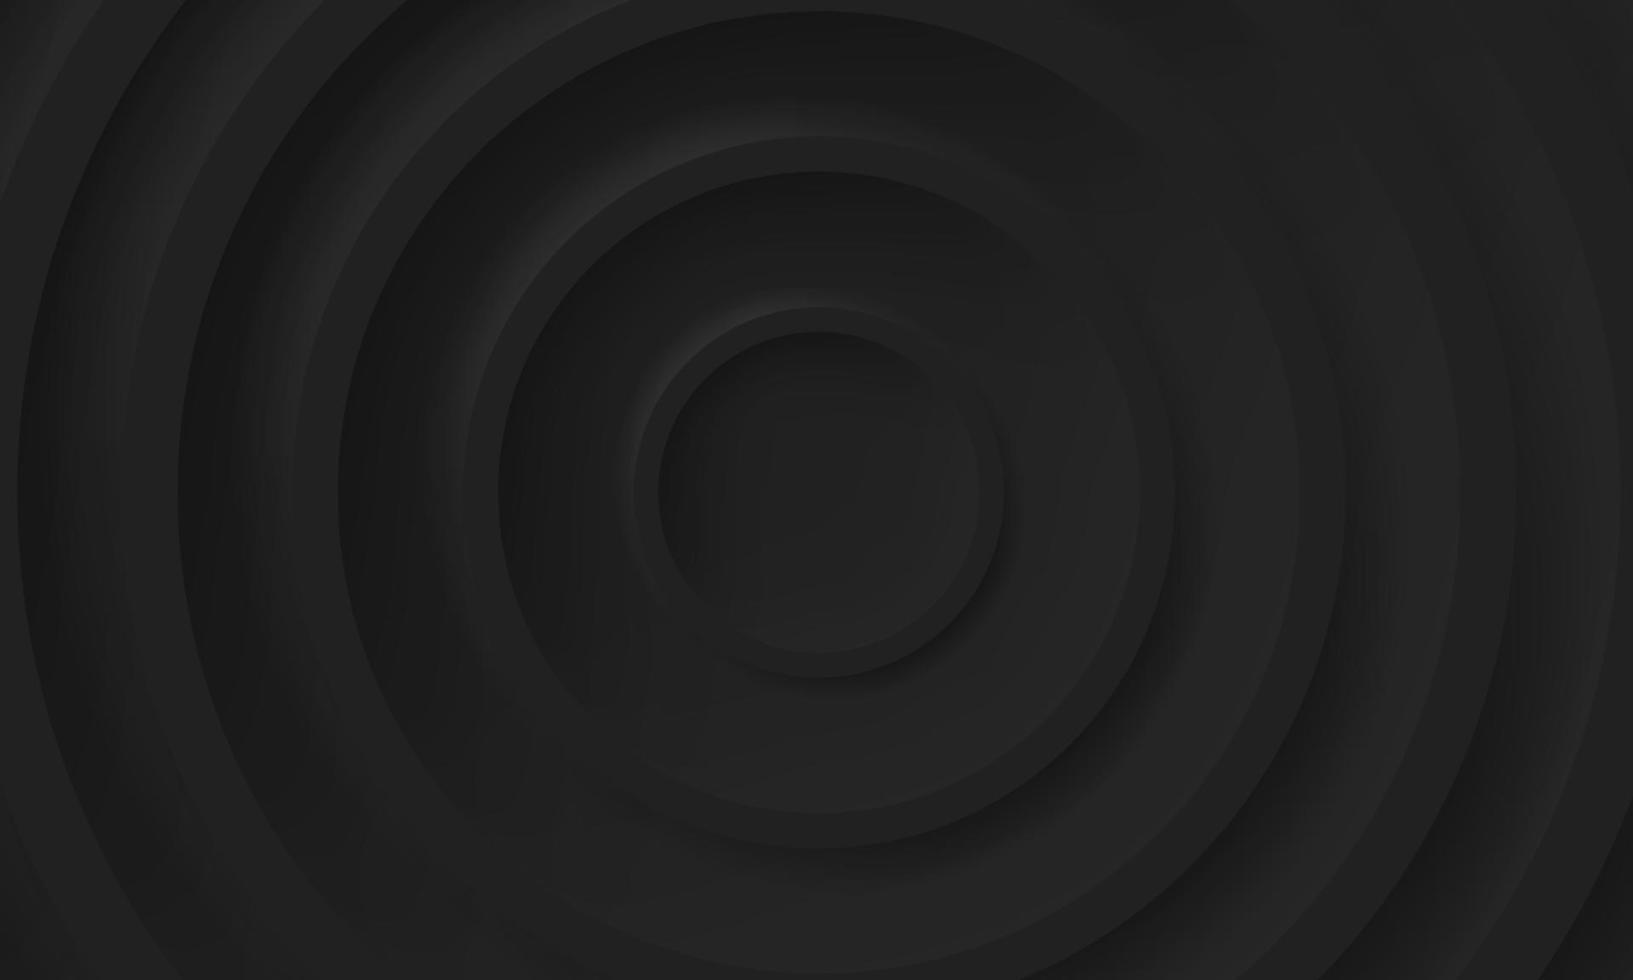 svart futuristisk cirkelbakgrund i neumorfismstil. geometriska runda tomma mönster. blank koncentrisk minimalism omslag. abstrakt cirkulär modern tapetdesign. vektor illustration.